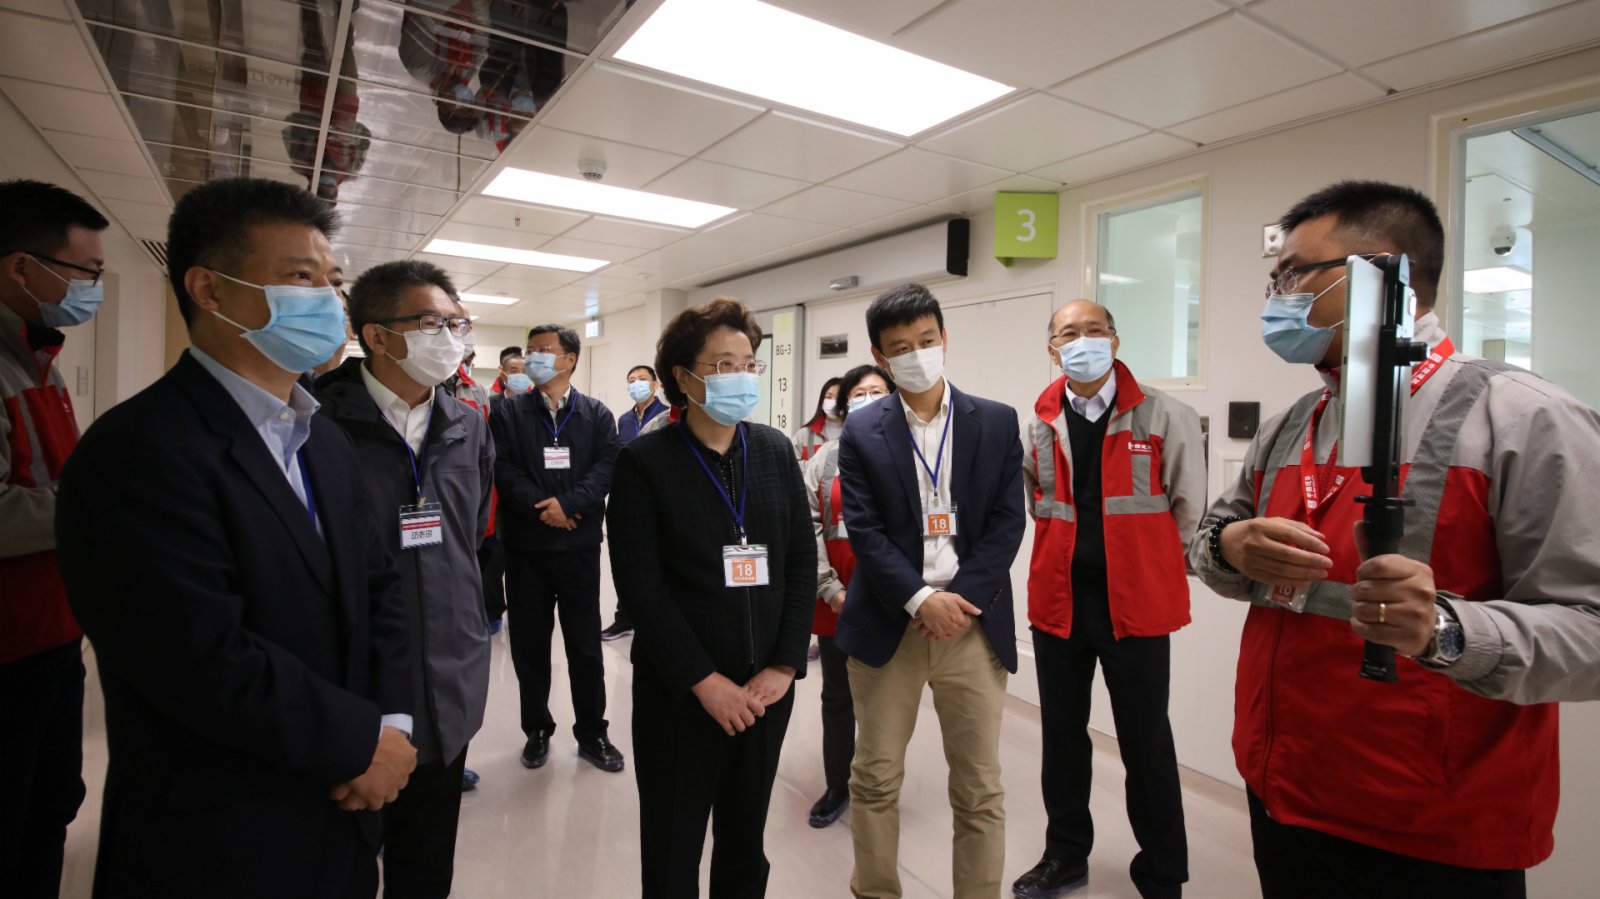 仇鴻走訪北大嶼山醫院香港感染控制中心